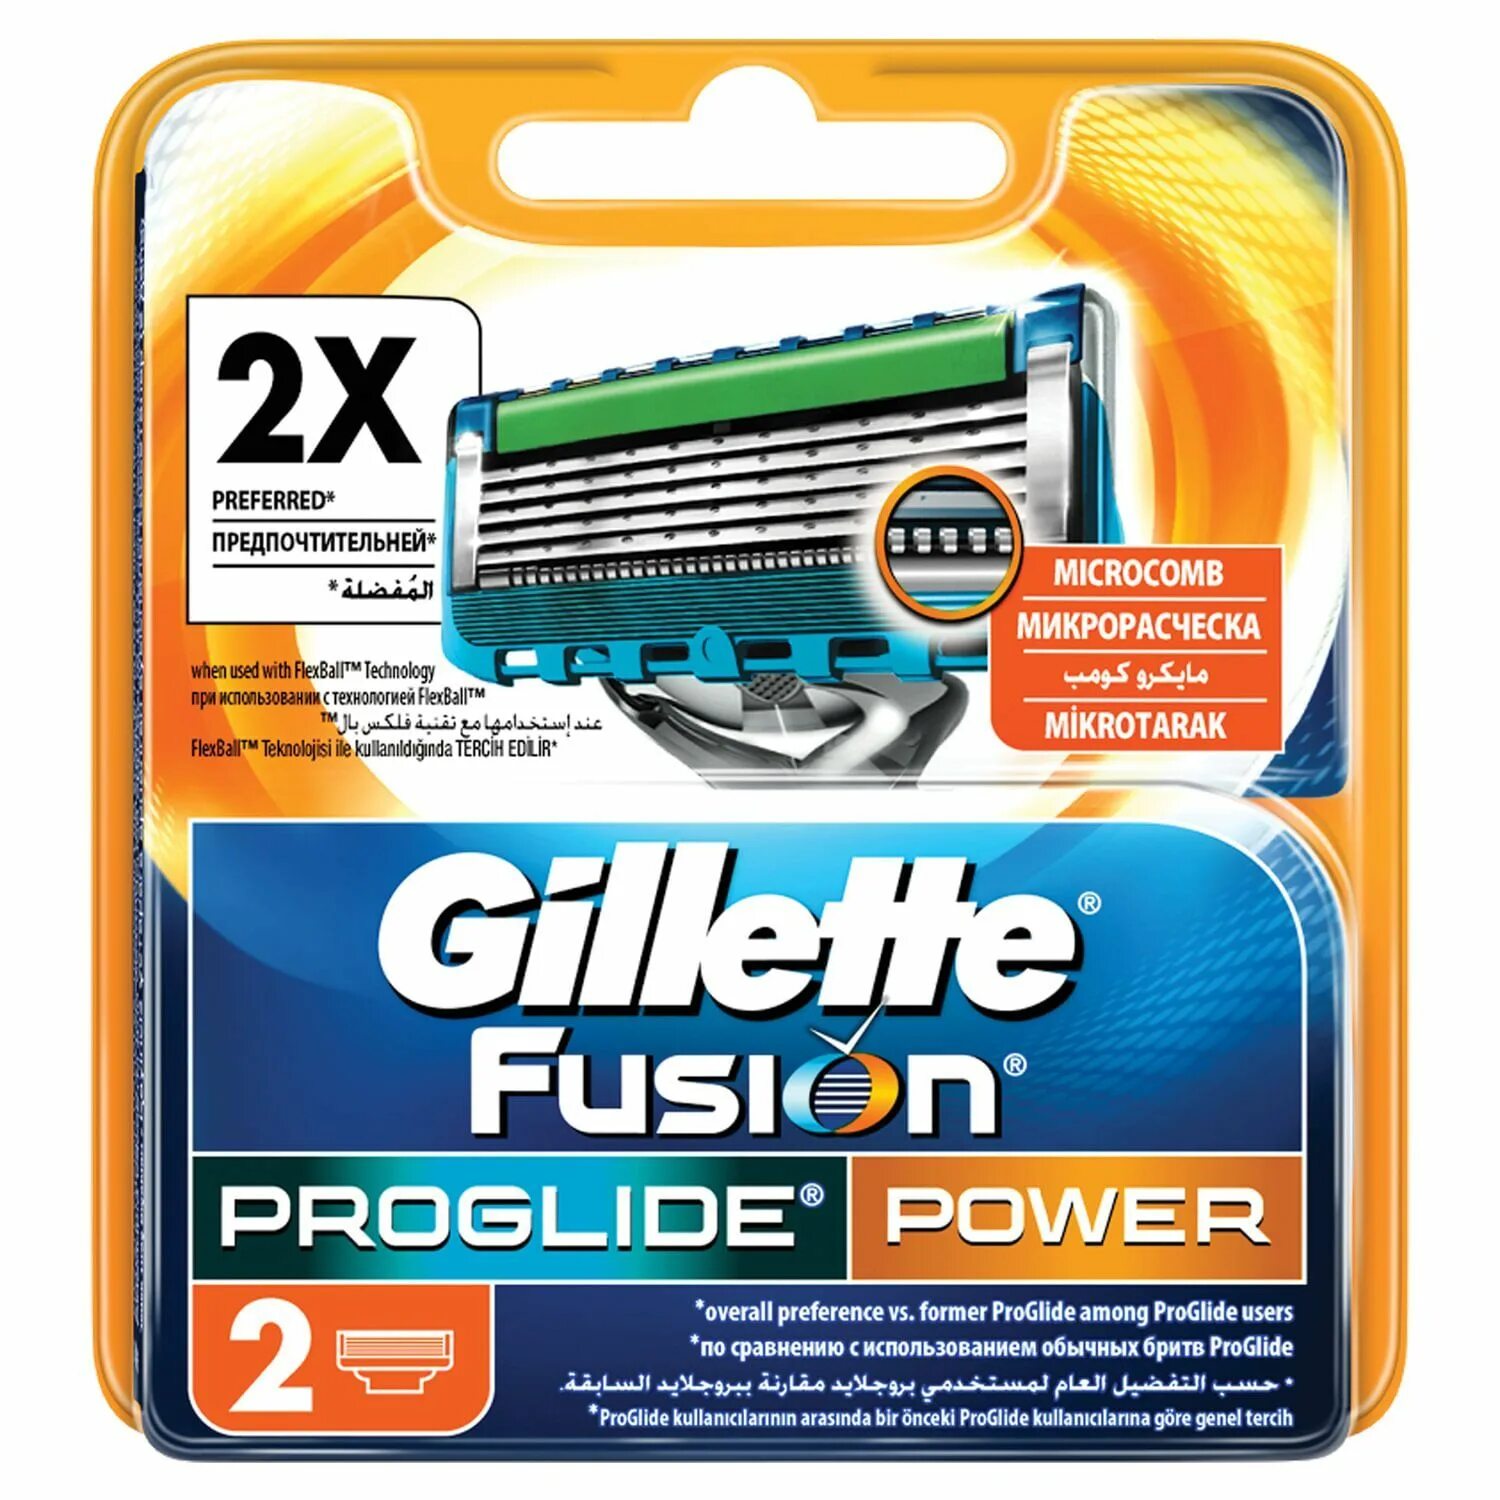 Fusion PROGLIDE Power сменные кассеты для бритья 2шт. Power 5 купить